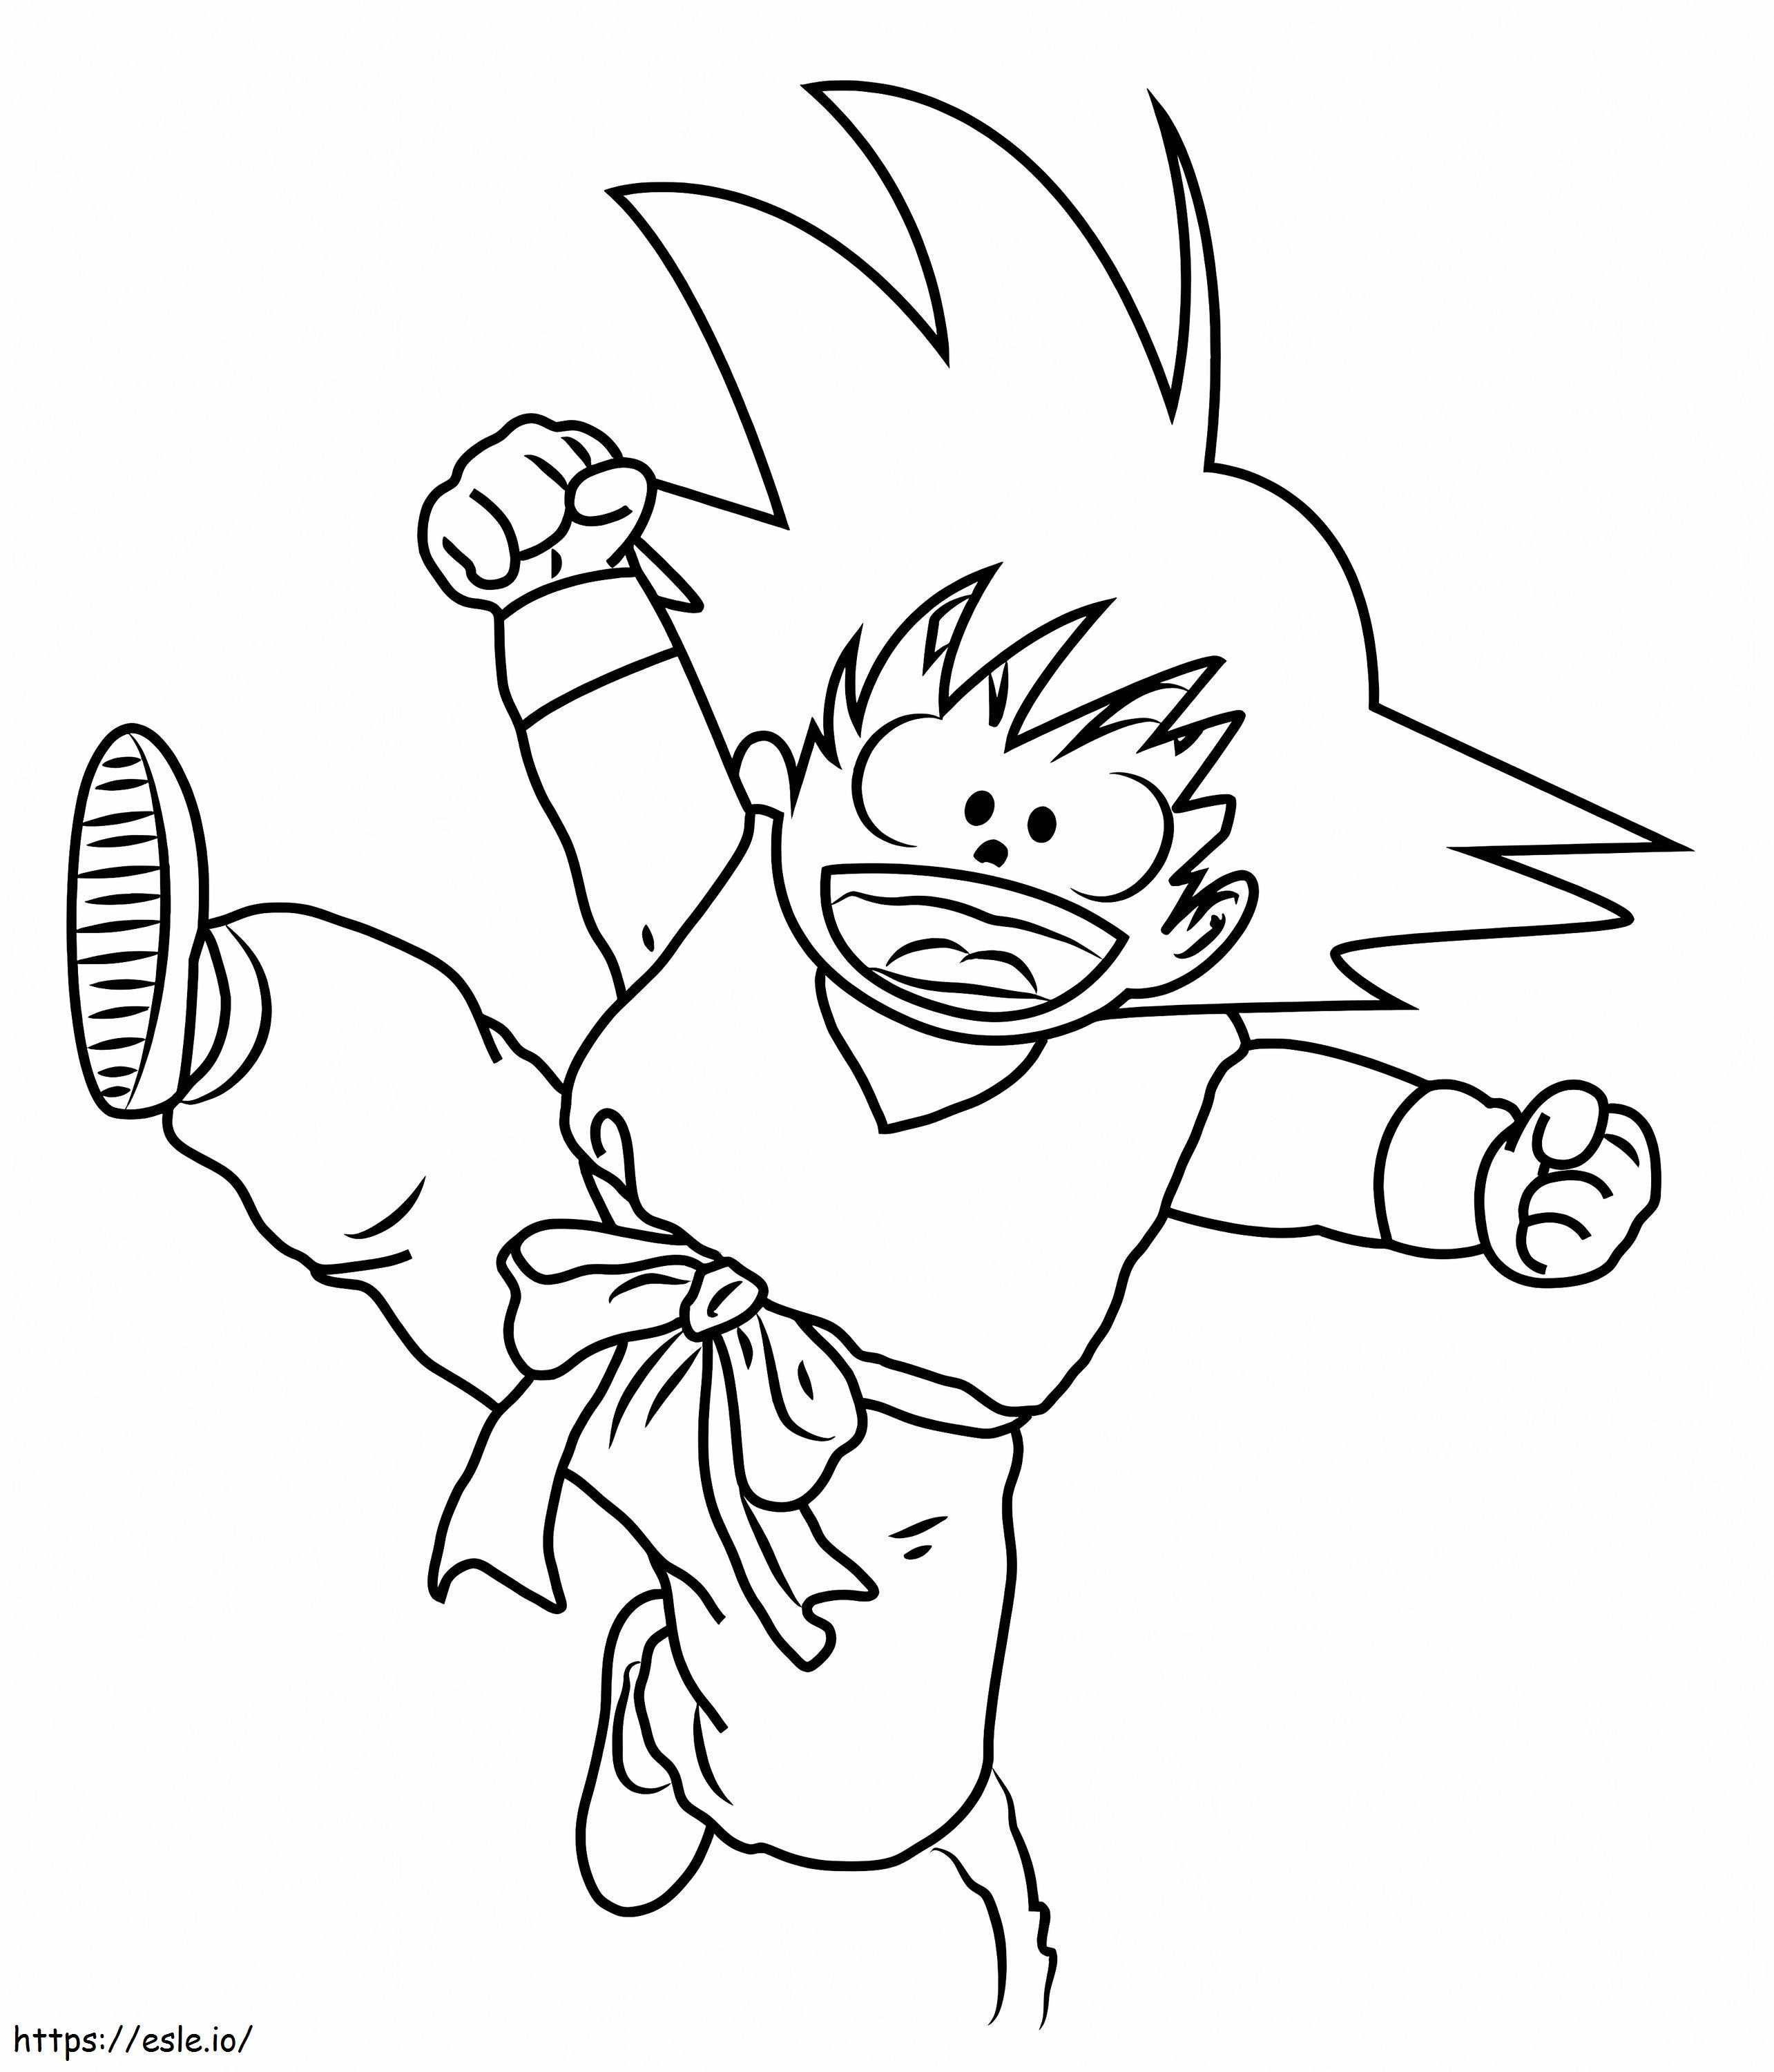 Lustiges Springen des kleinen Goku ausmalbilder